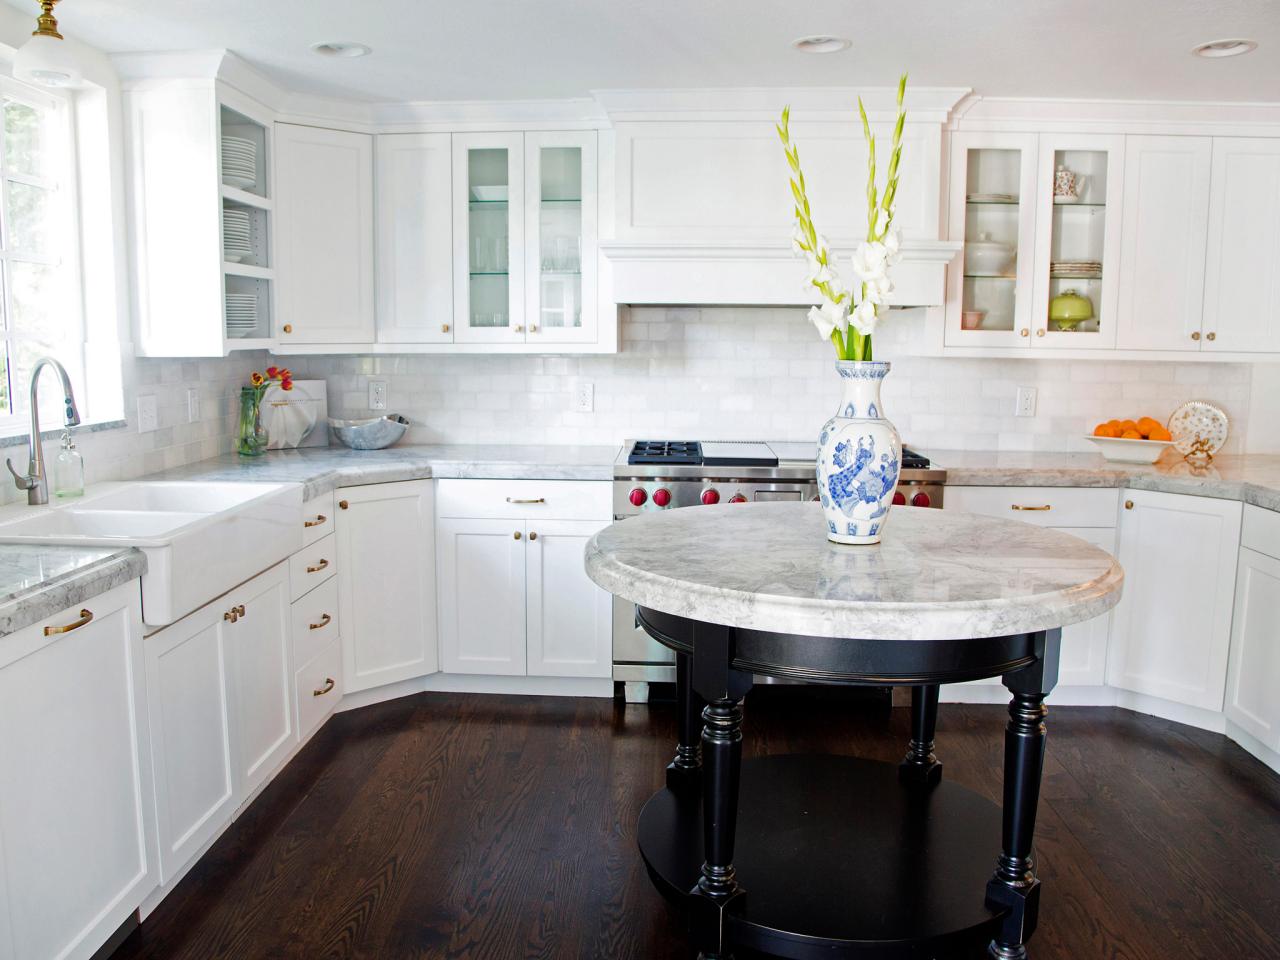 40+ Best Kitchen Cabinet Design Ideas | Architecture Ideas